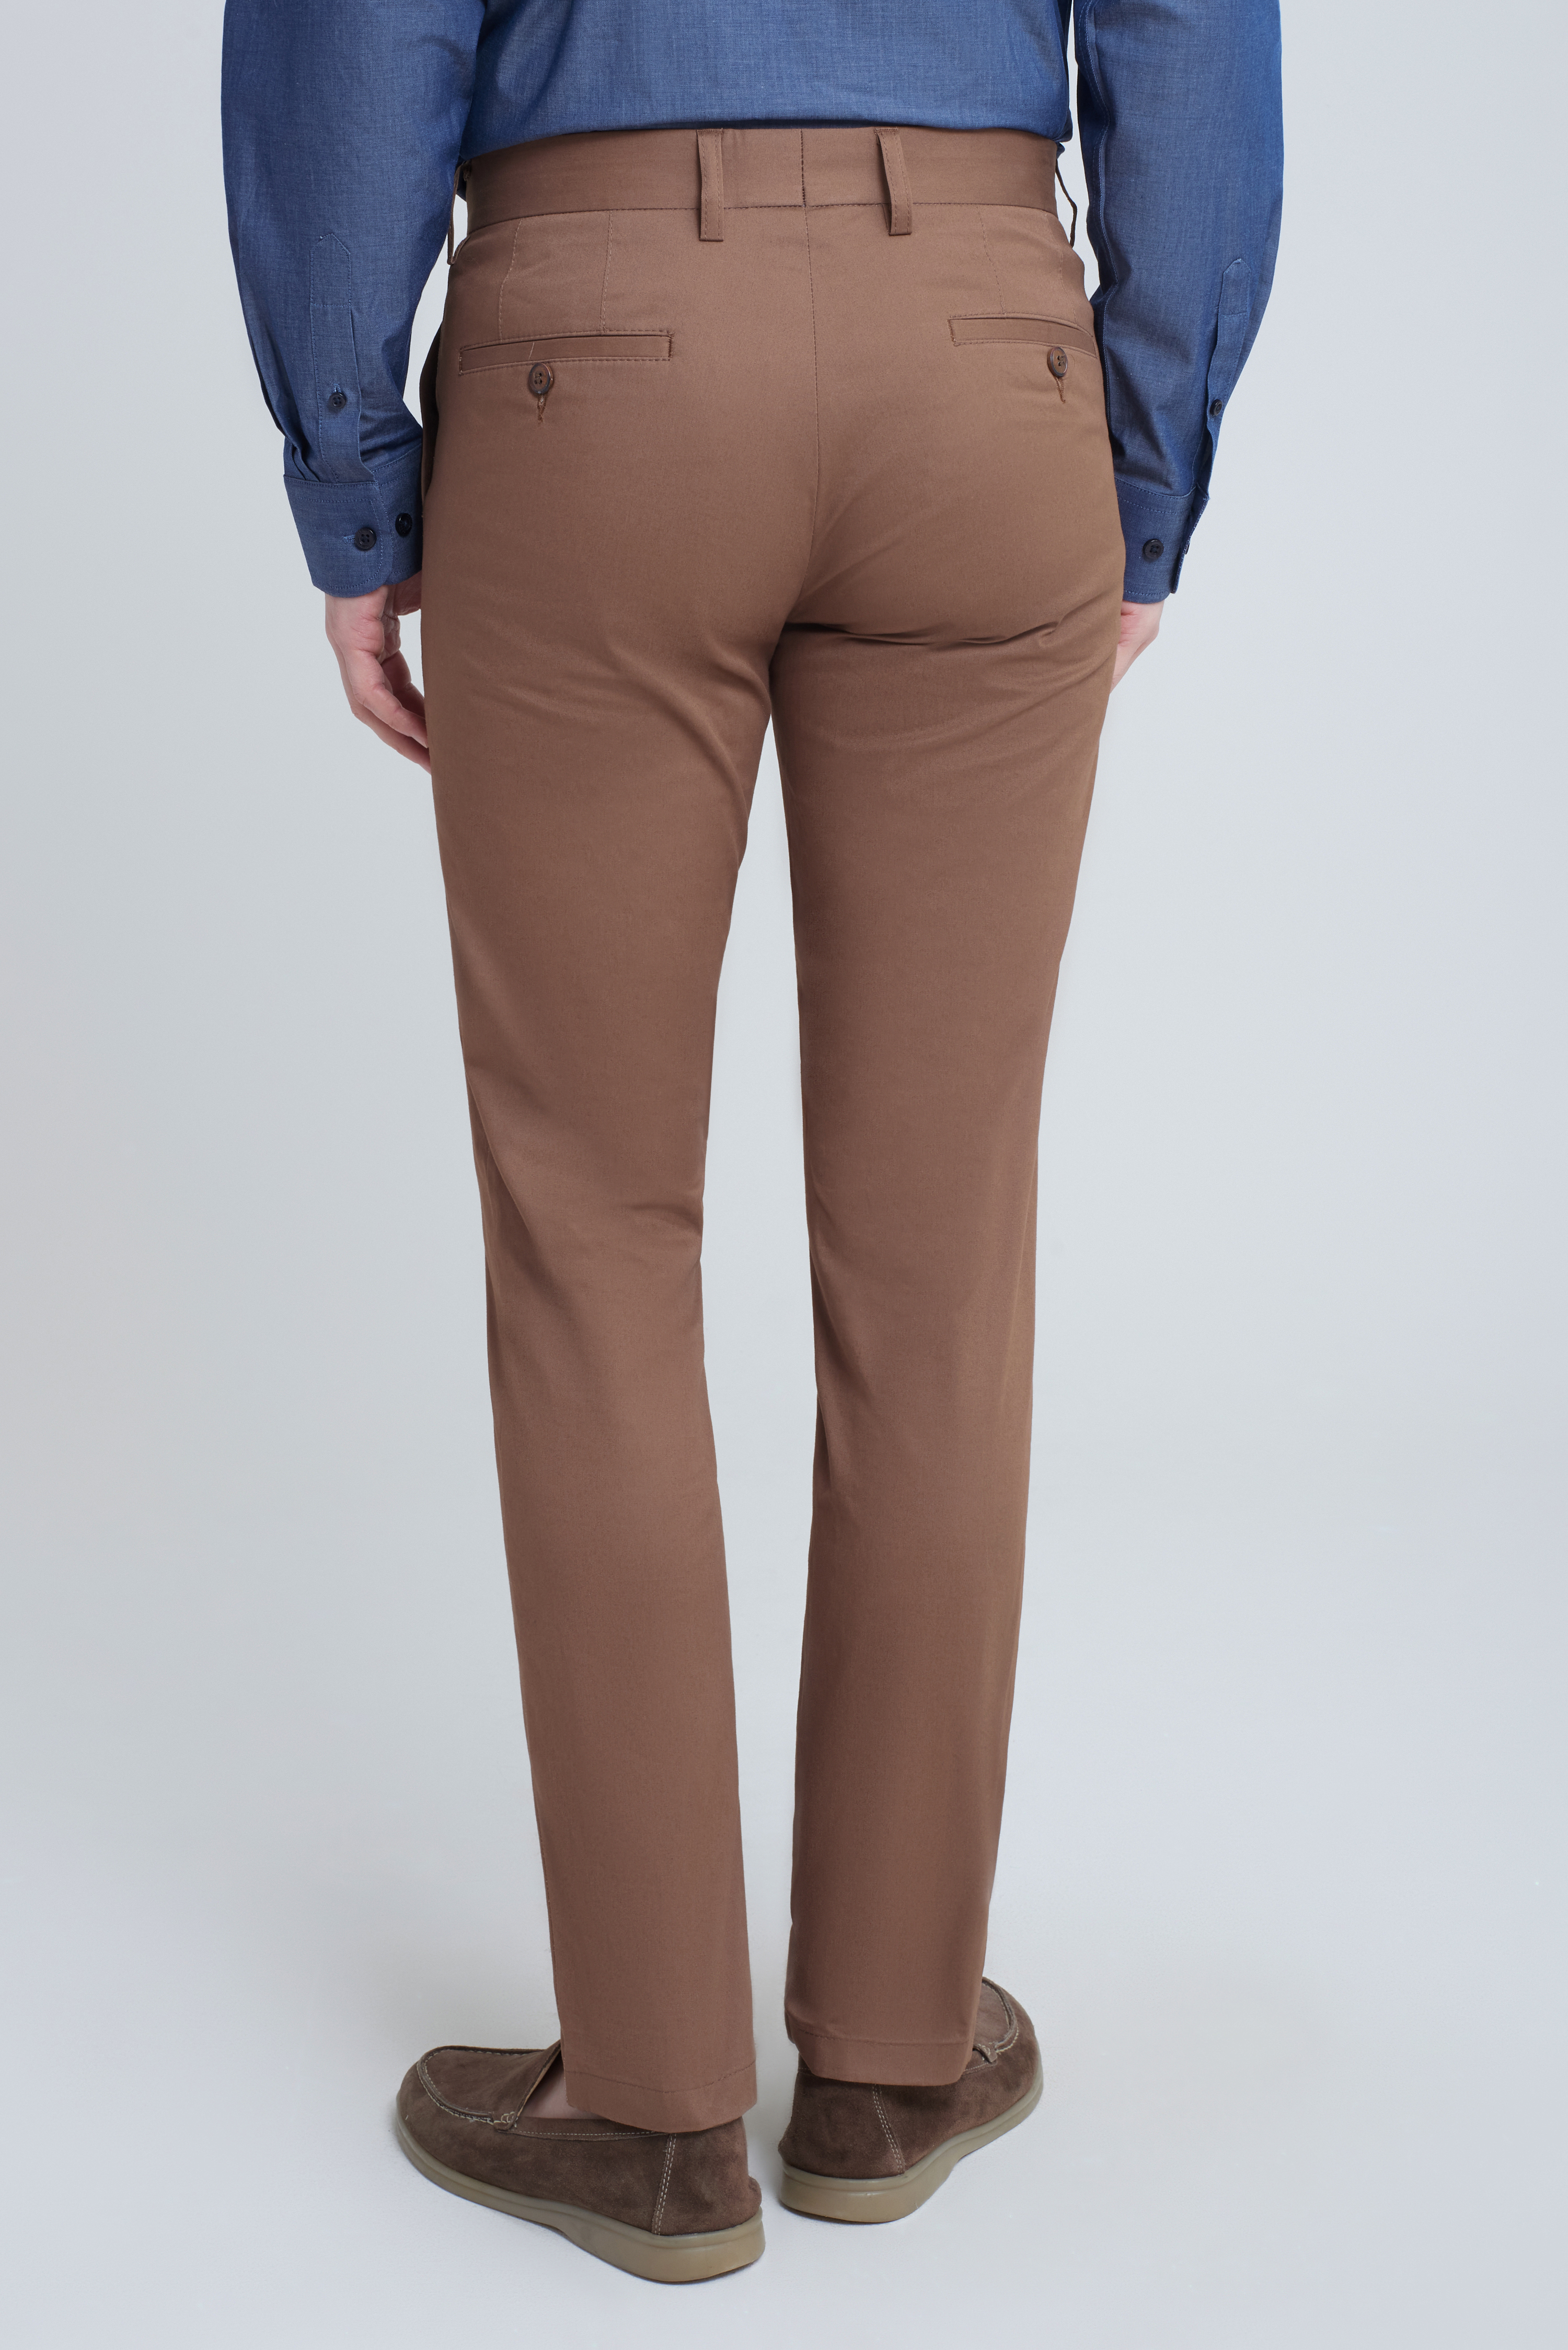 Хлопковые коричневые брюки чинос Super Slim Fit